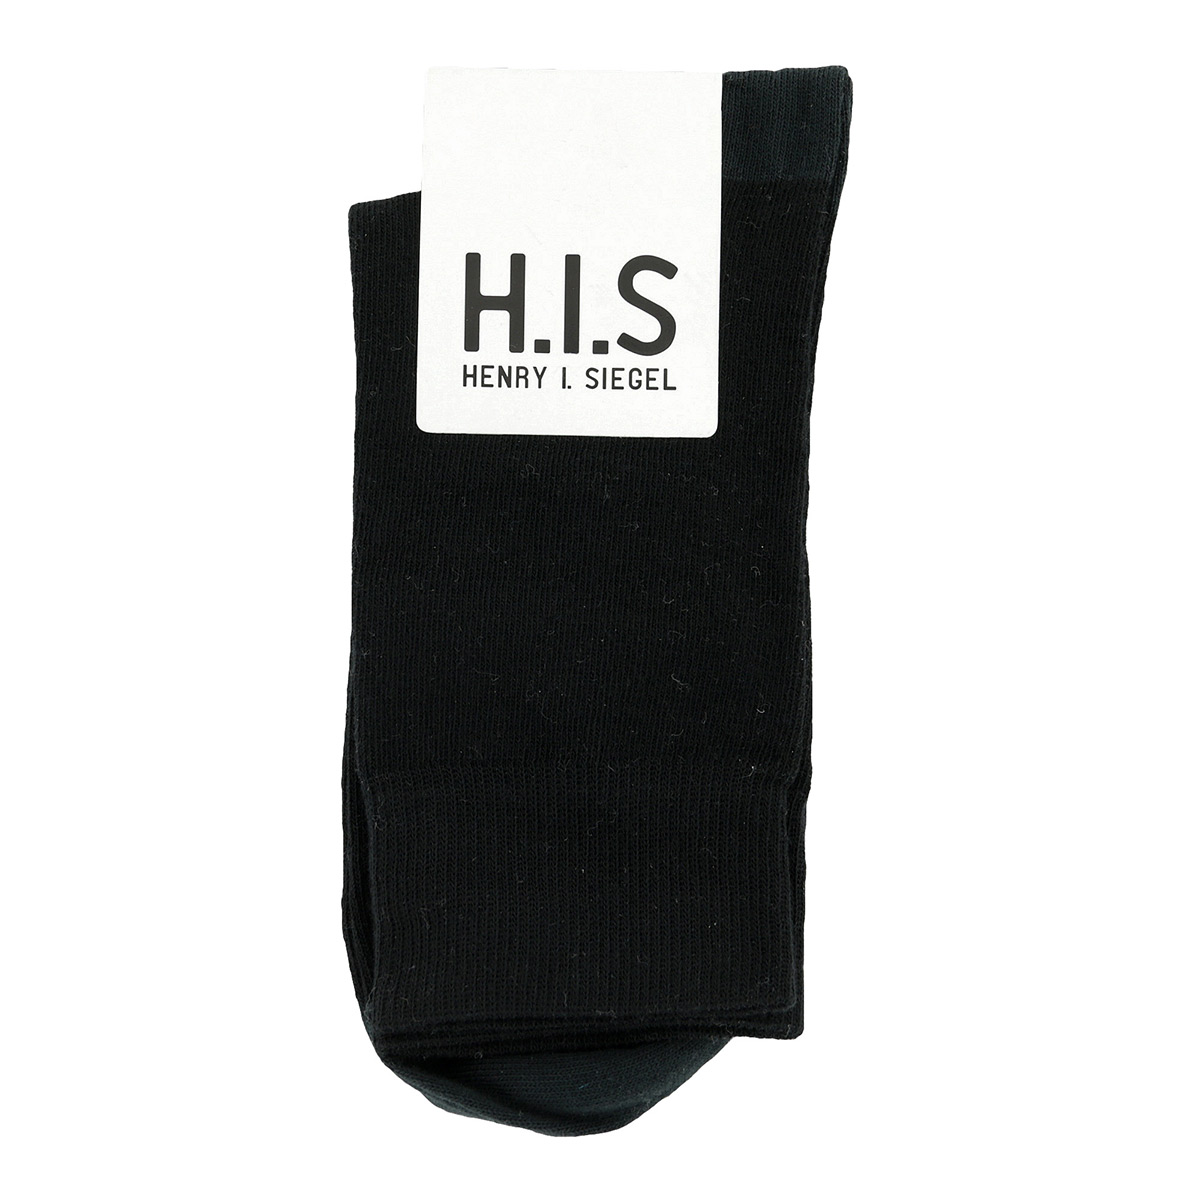 H.I.S Socks